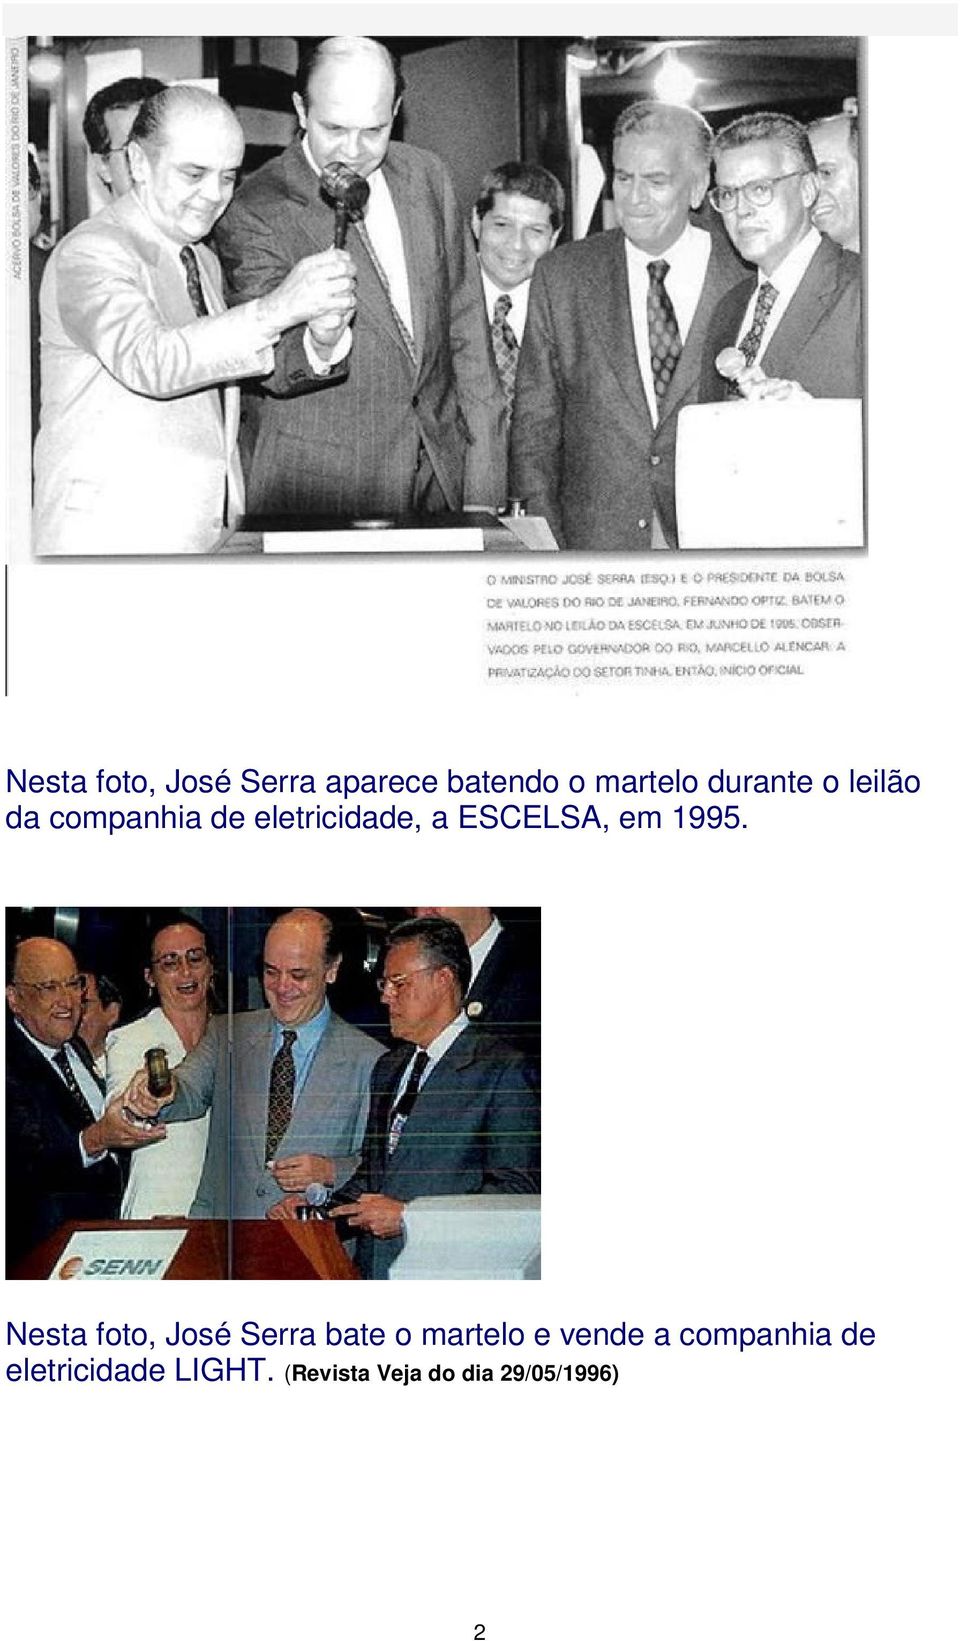 Nesta foto, José Serra bate o martelo e vende a companhia